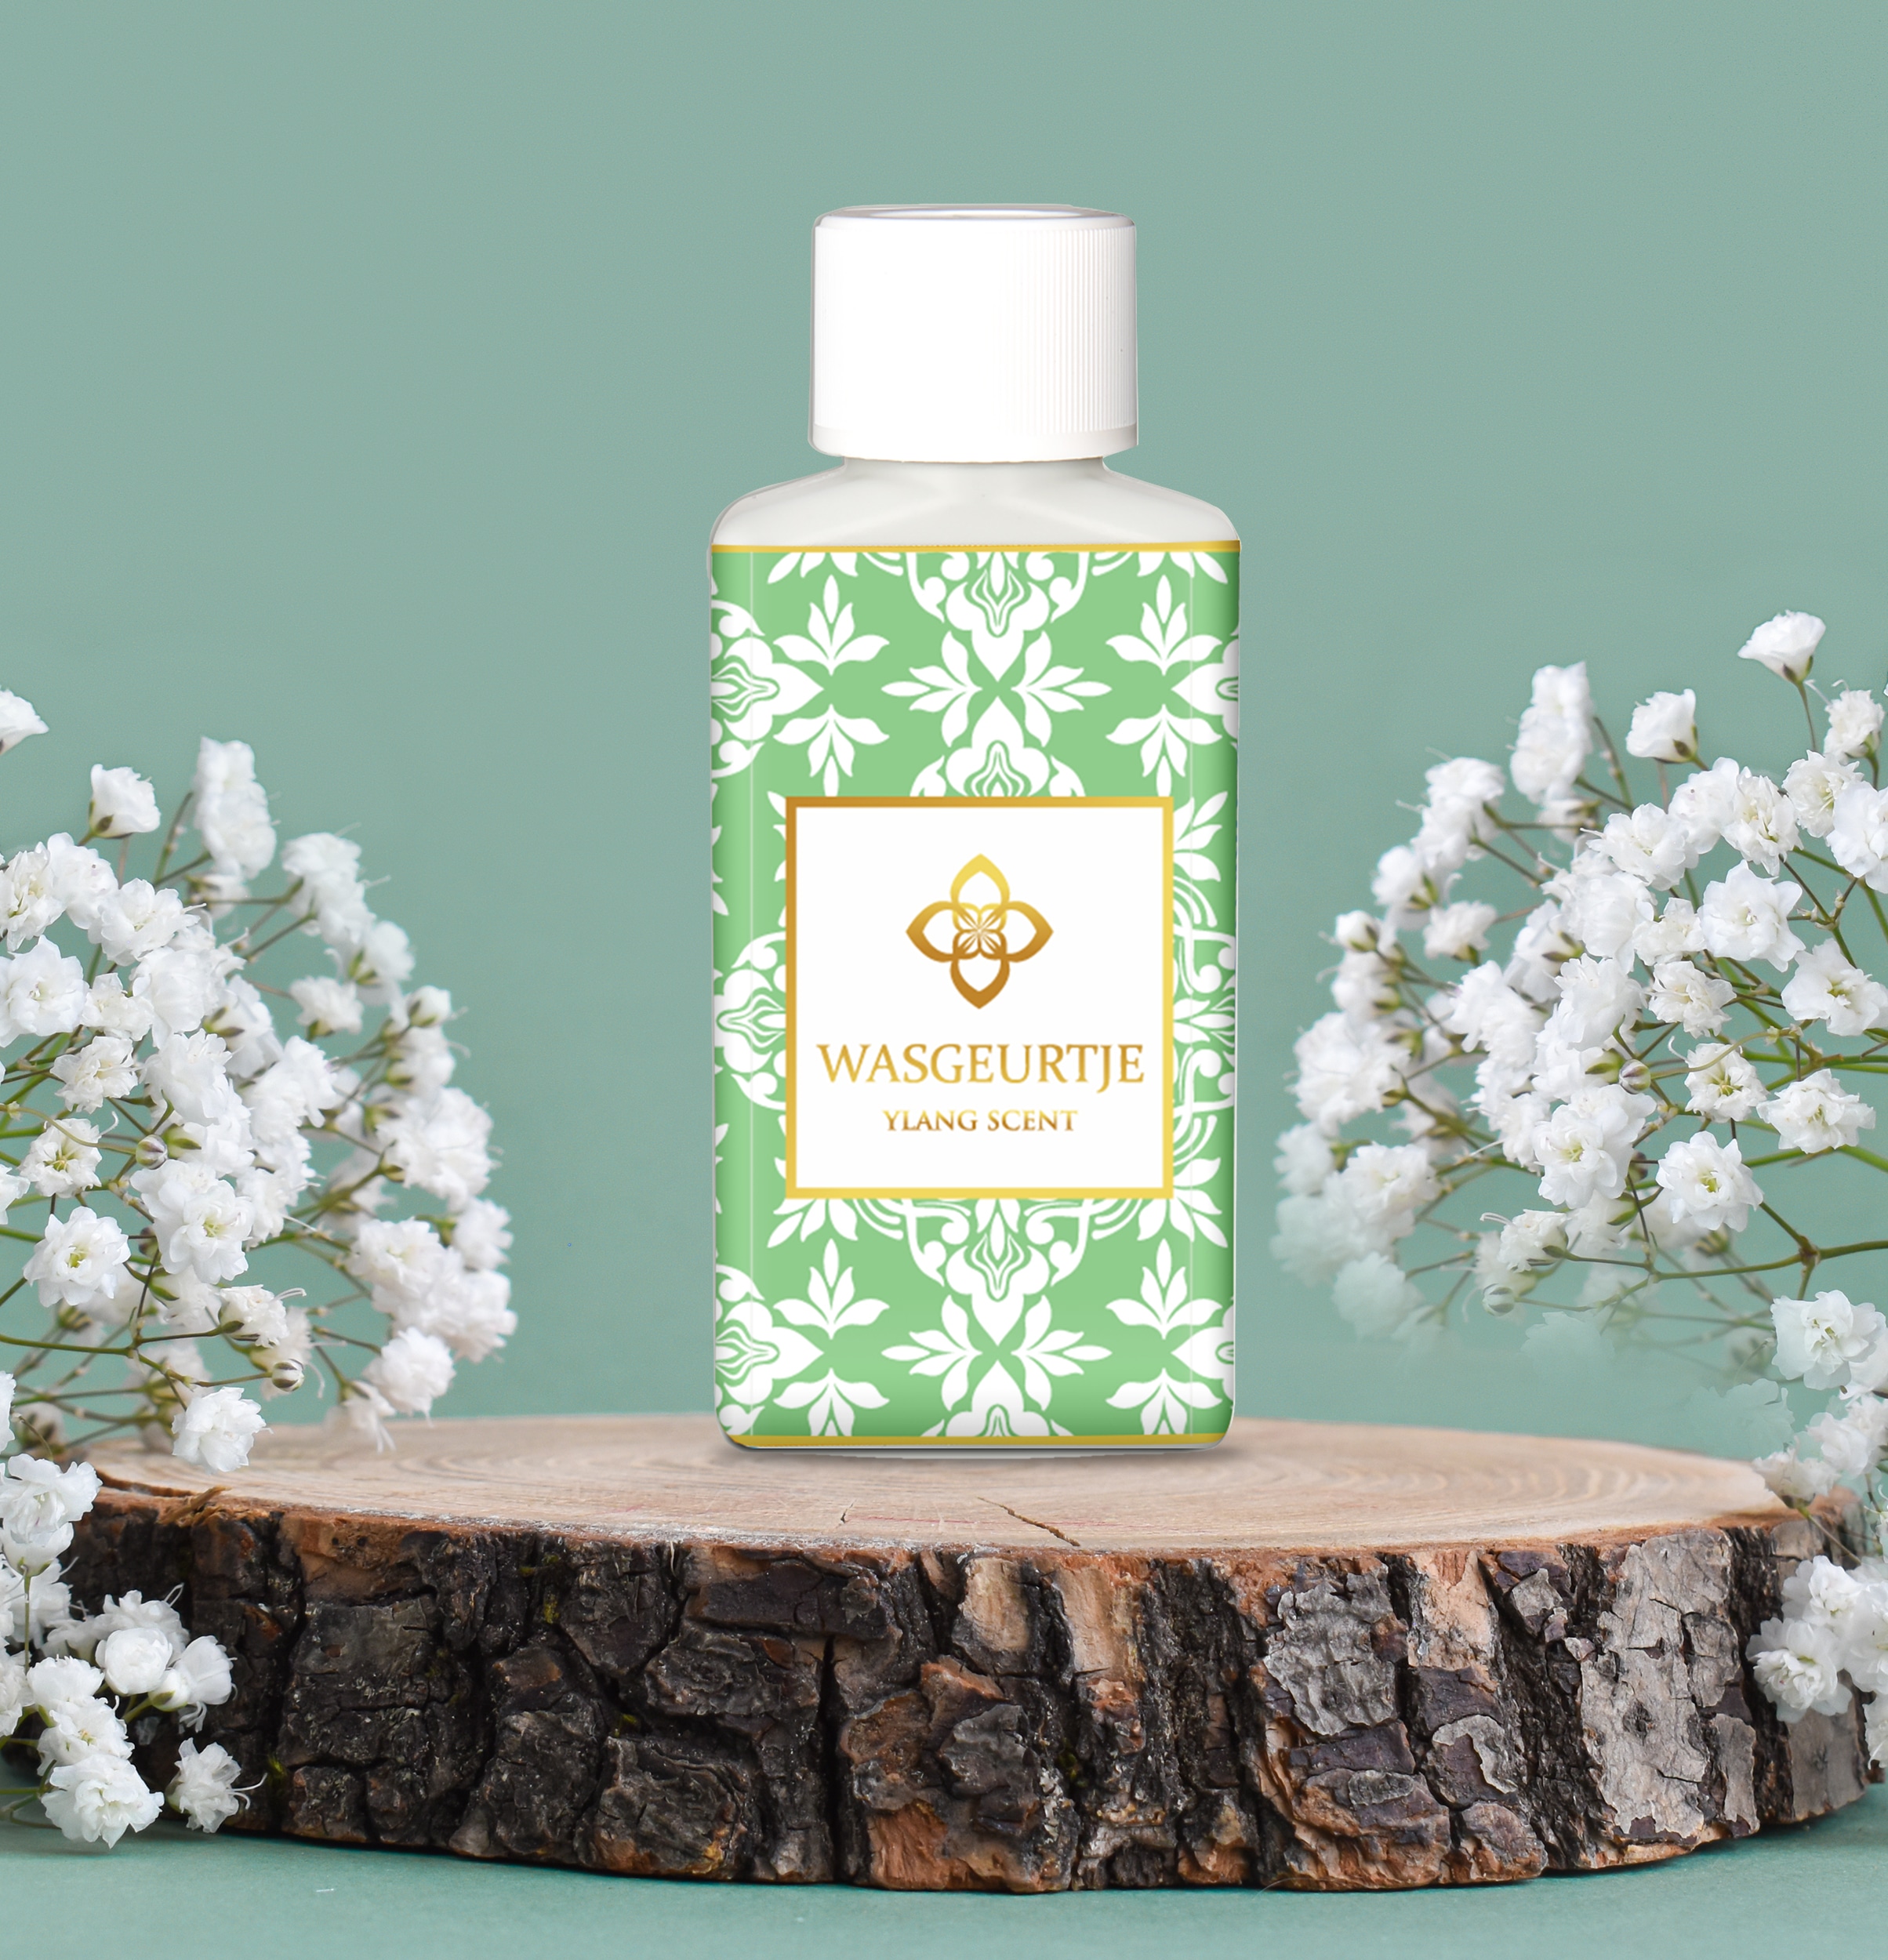 Wasgeurtje Ylang Scent wasmiddel met een groen en wit floraal patroon, naast witte bloesems op een houten schijf.